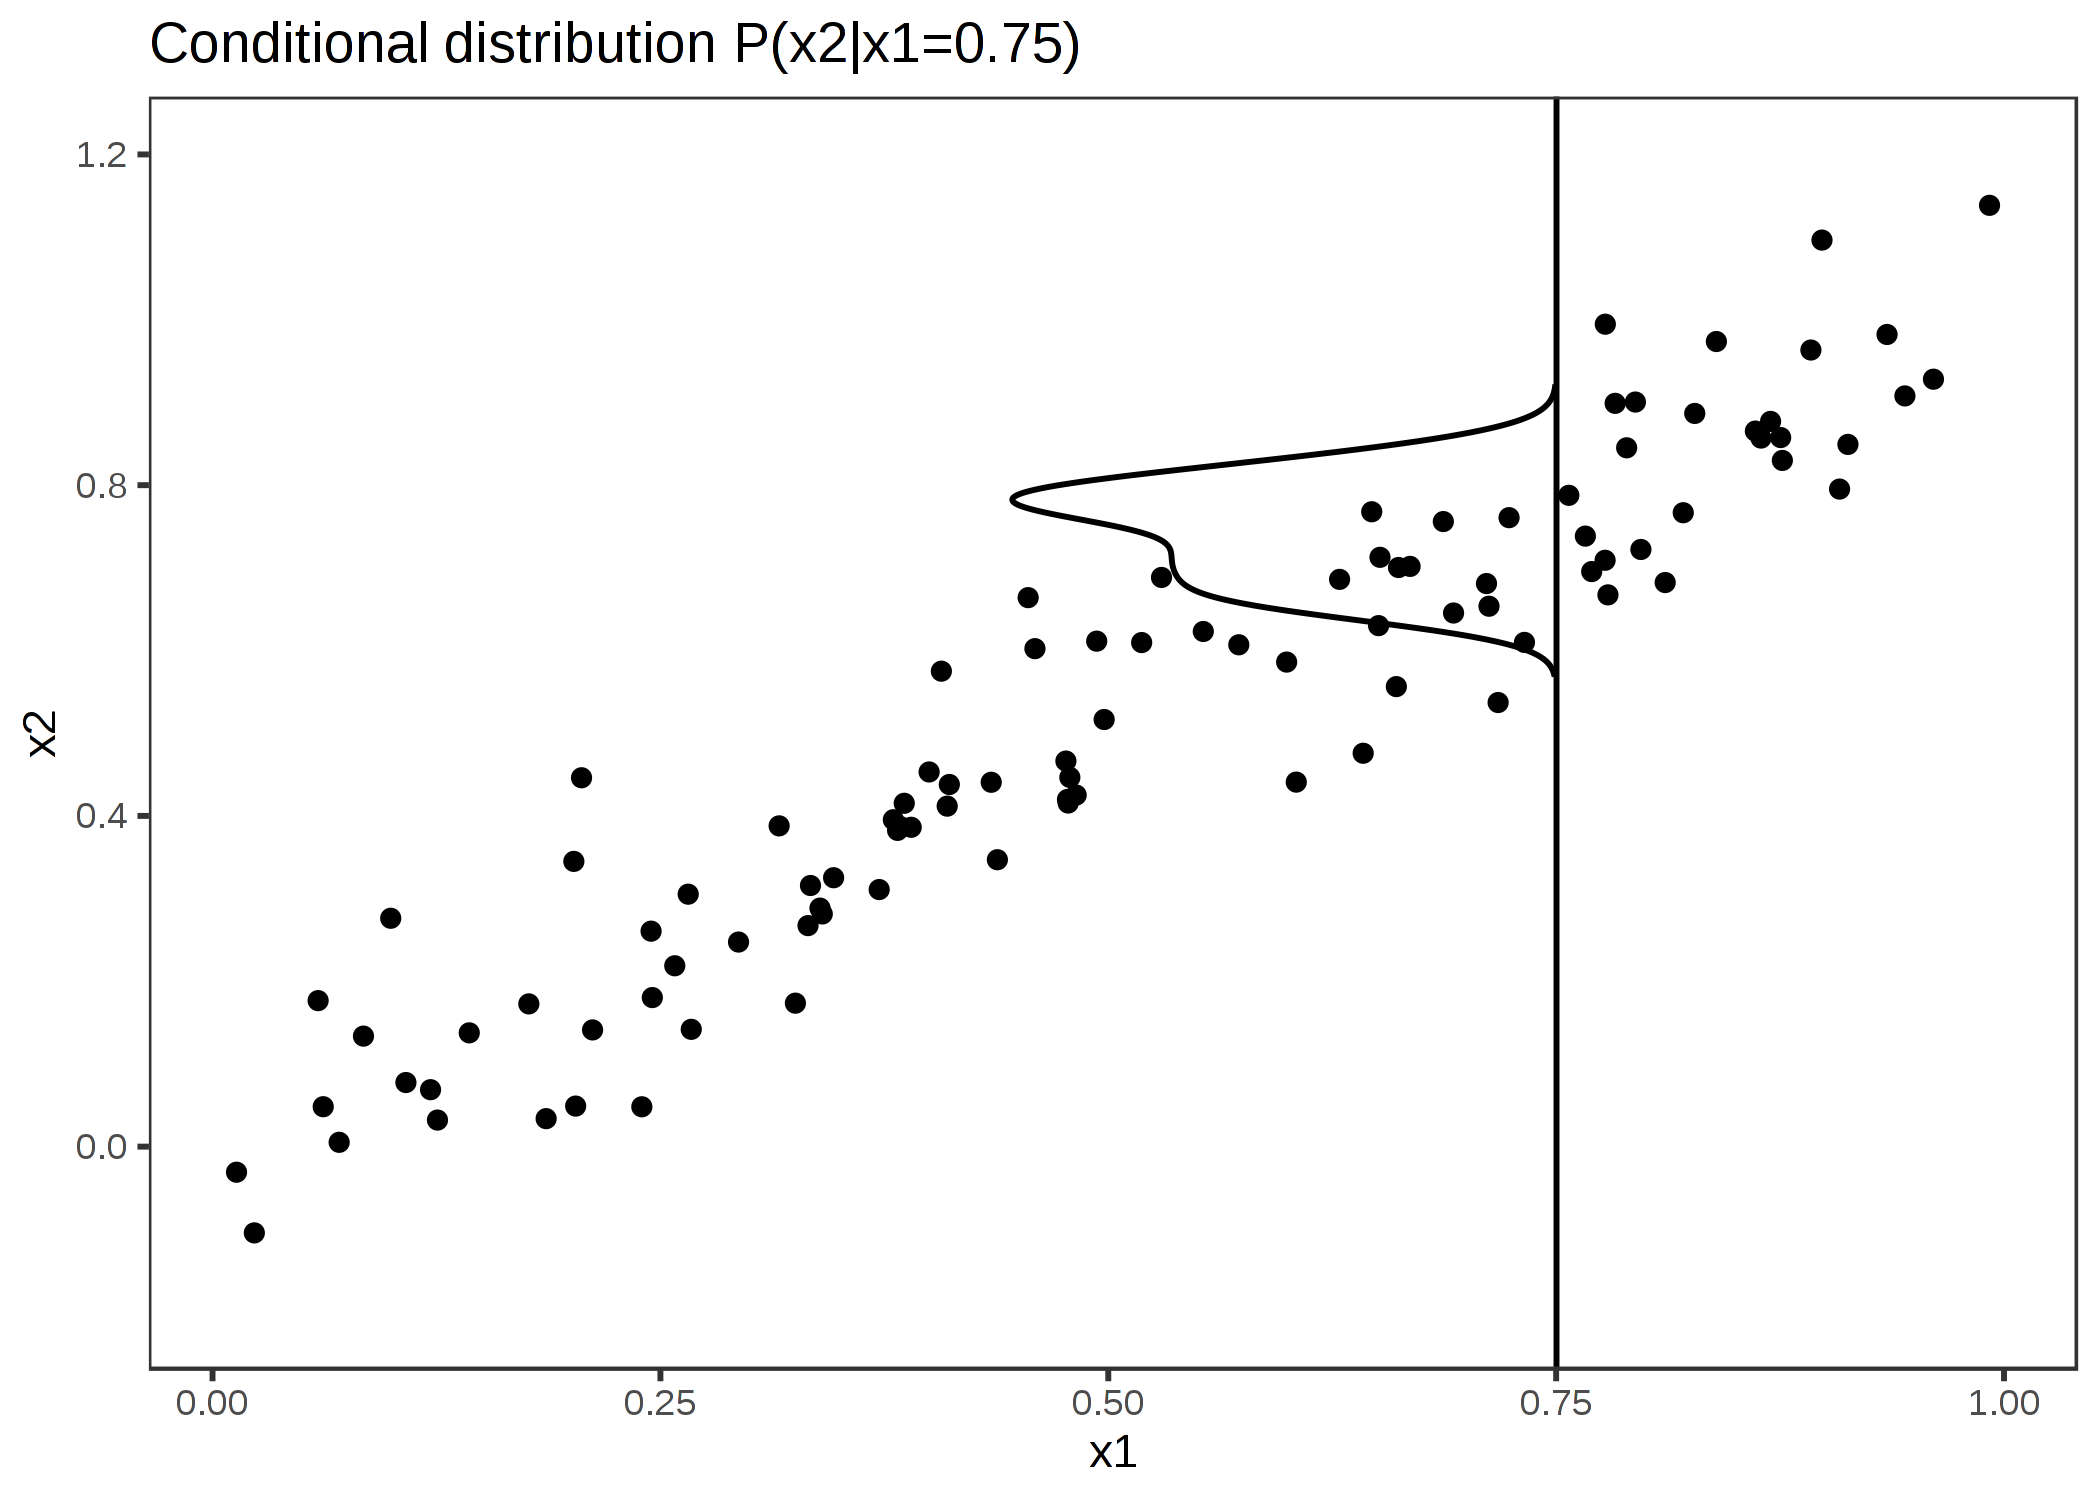 強く相関した特徴量 x1 と x2。 M-Plot は条件付き分布上で平均化する。ここで x1=0.75 のときの x2 の条件付き分布が示されている。局所的な予測を平均化することは両方の特徴量の影響を混ぜることにつながる。